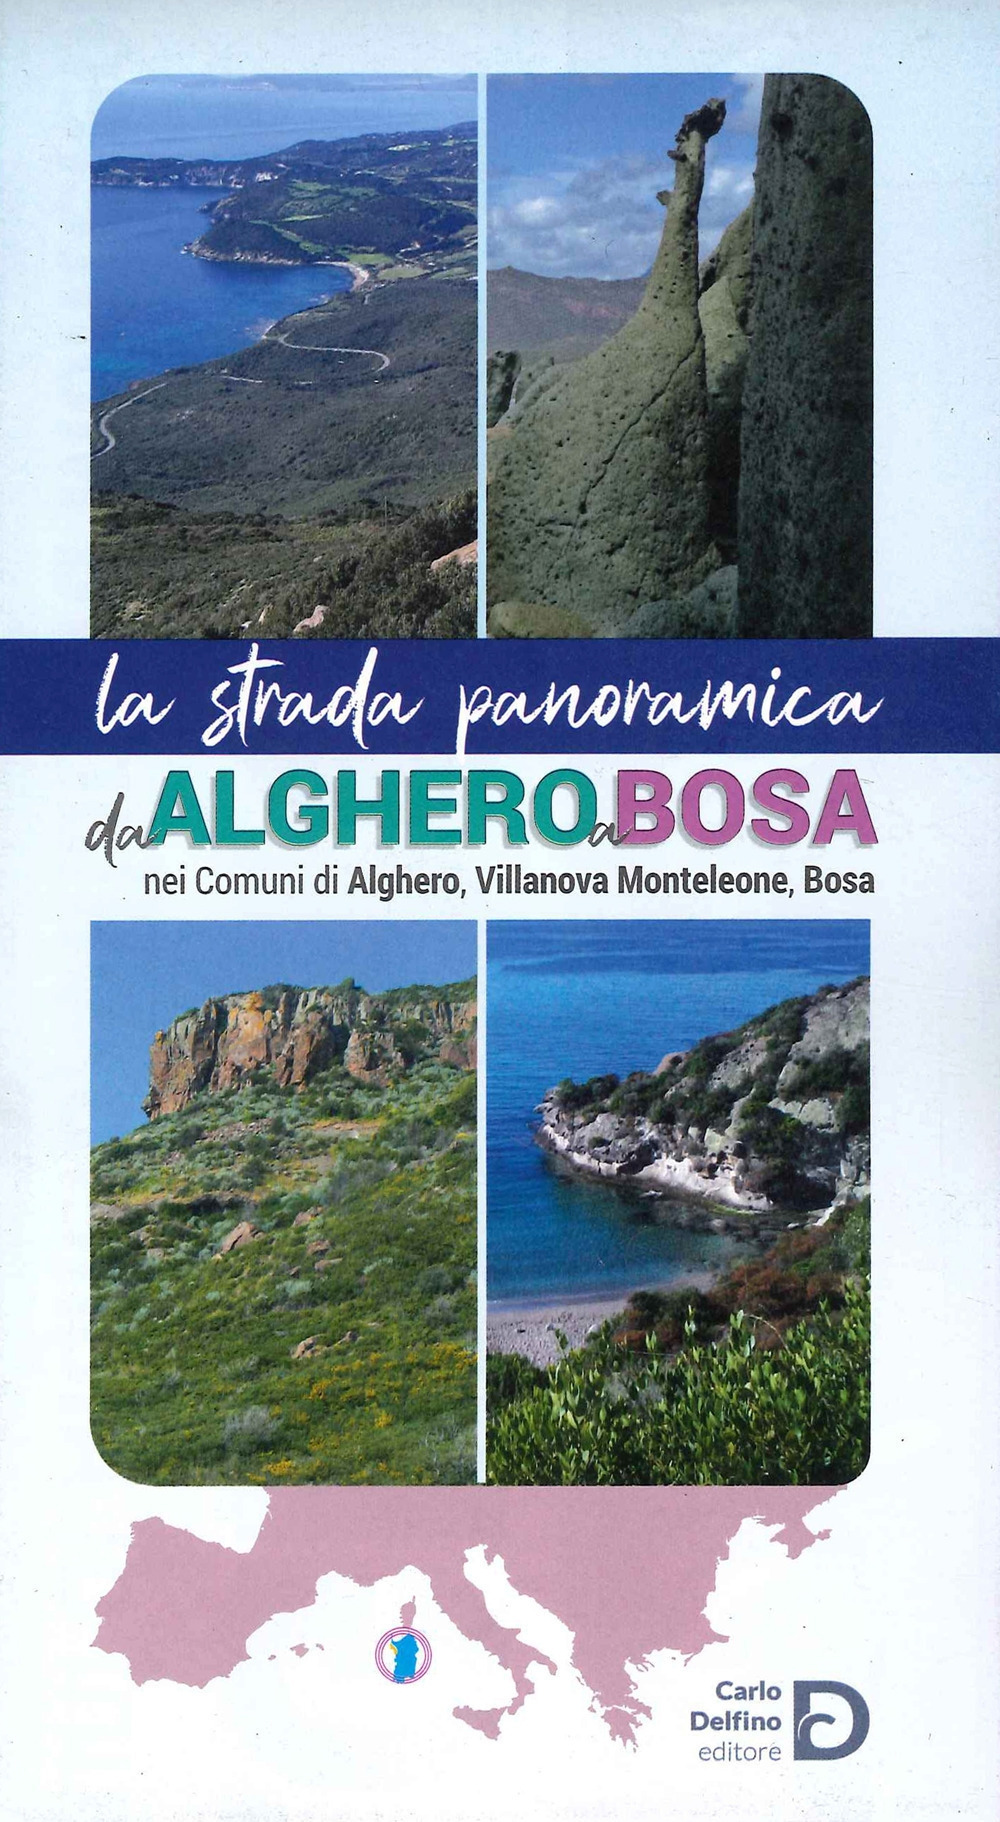 La strada panoramica da Alghero a Bosa